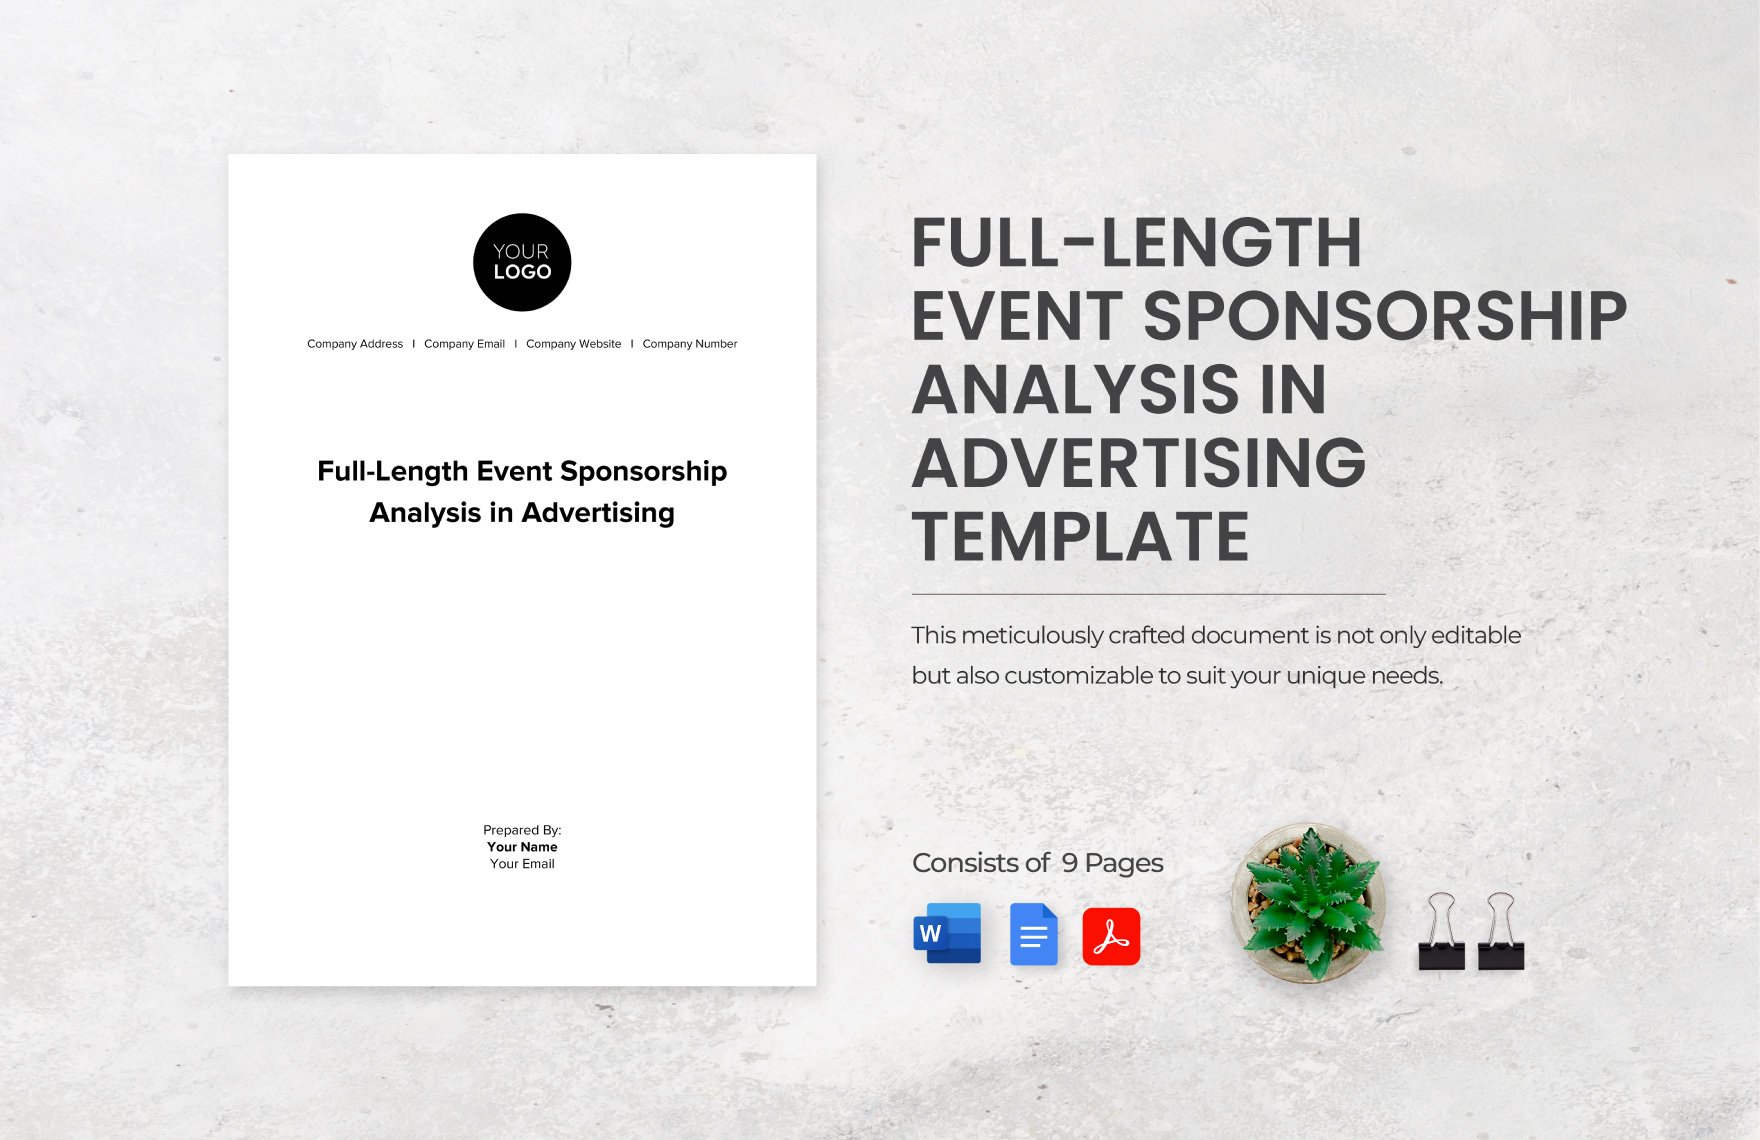 Full-Length Event Sponsorship Analysis in Advertising Template